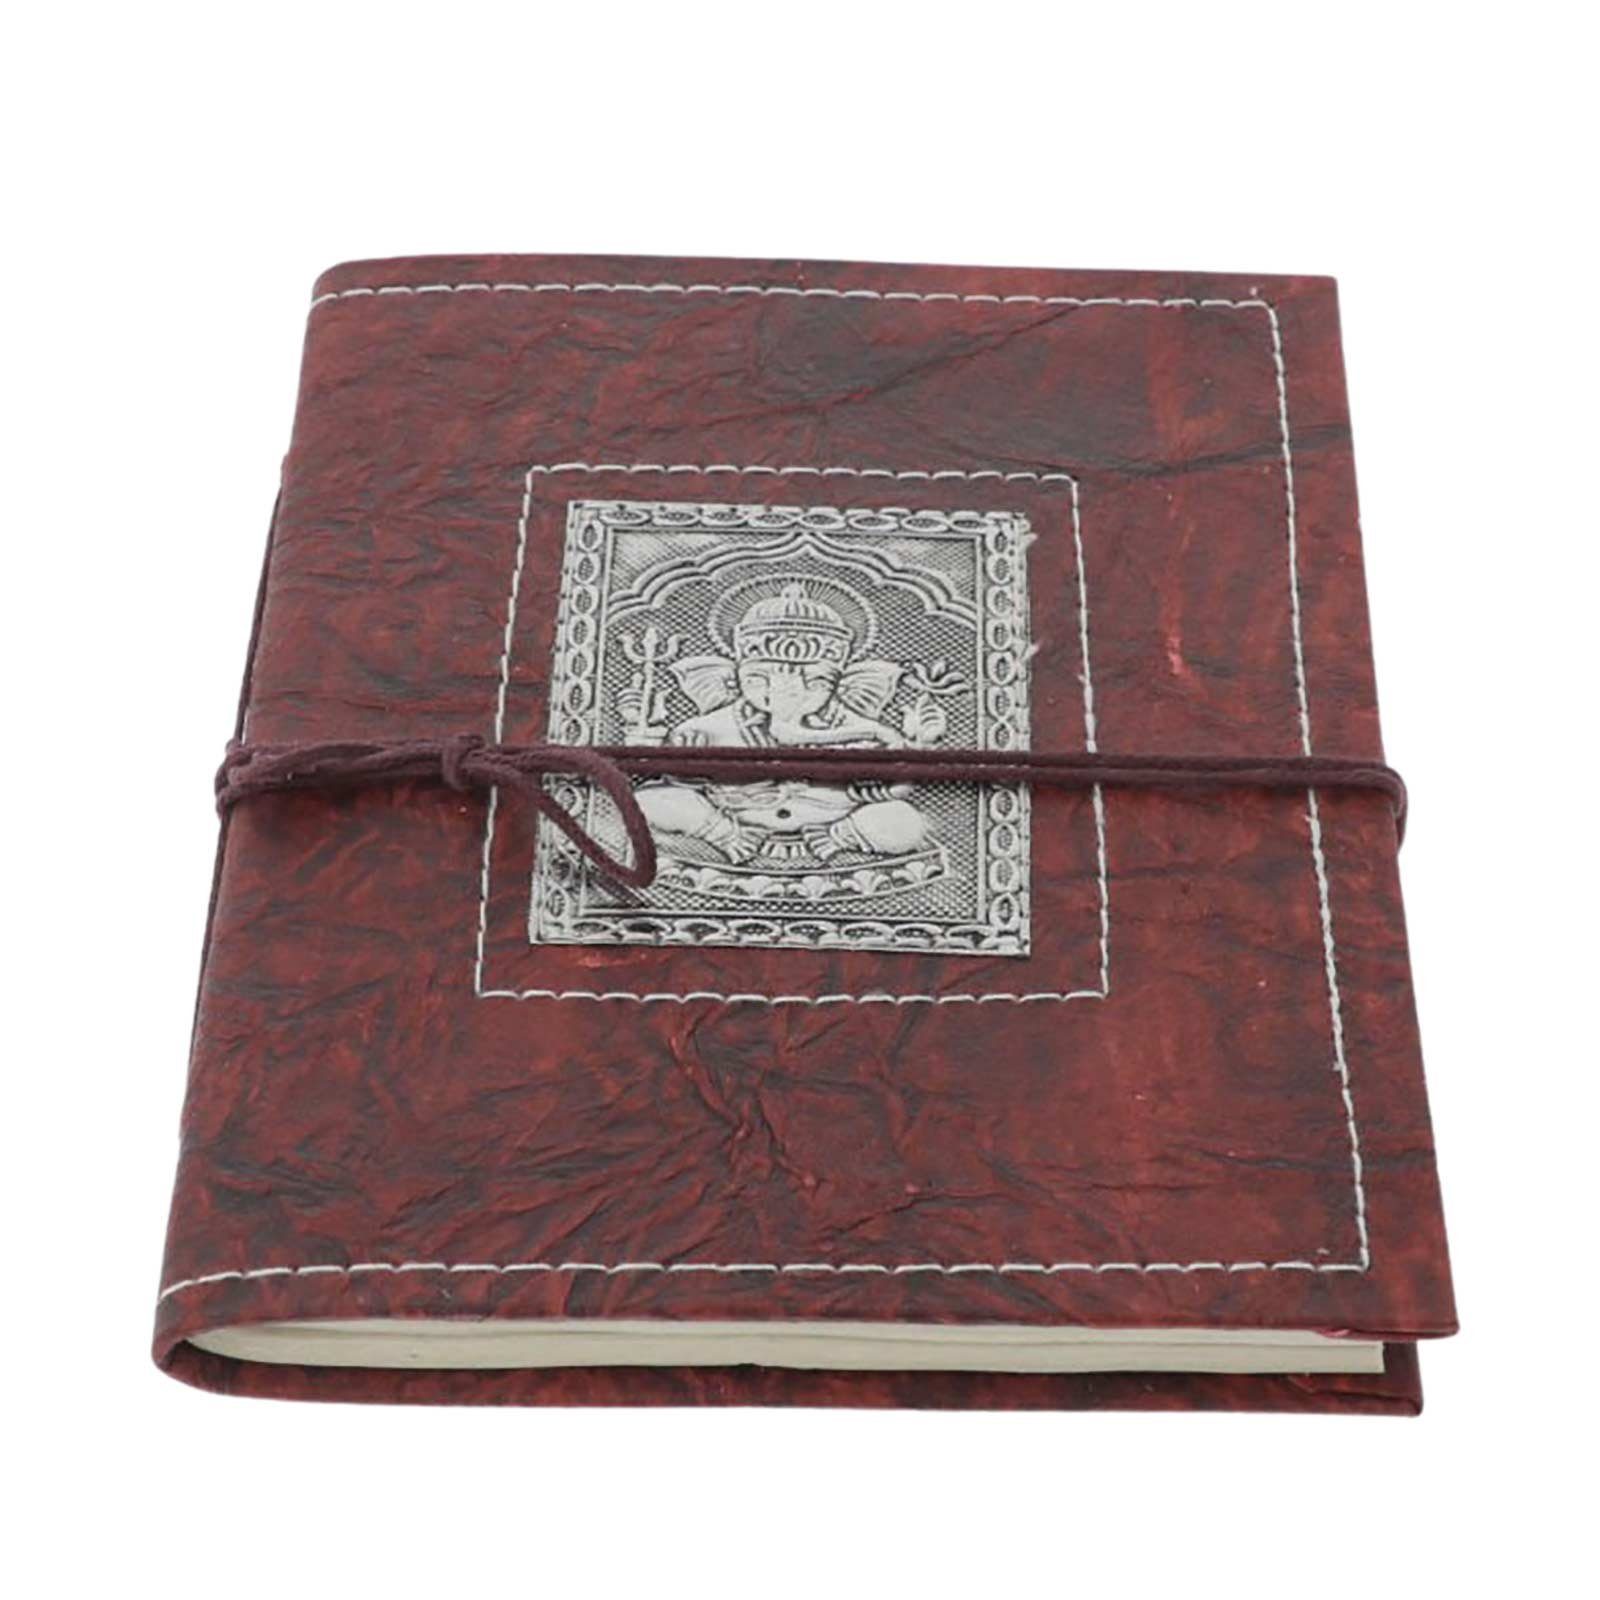 KUNST UND MAGIE Notizbuch Lord Ganesha Tagebuch Poesiealbum handgefertigt Notizbuch 20x15cm